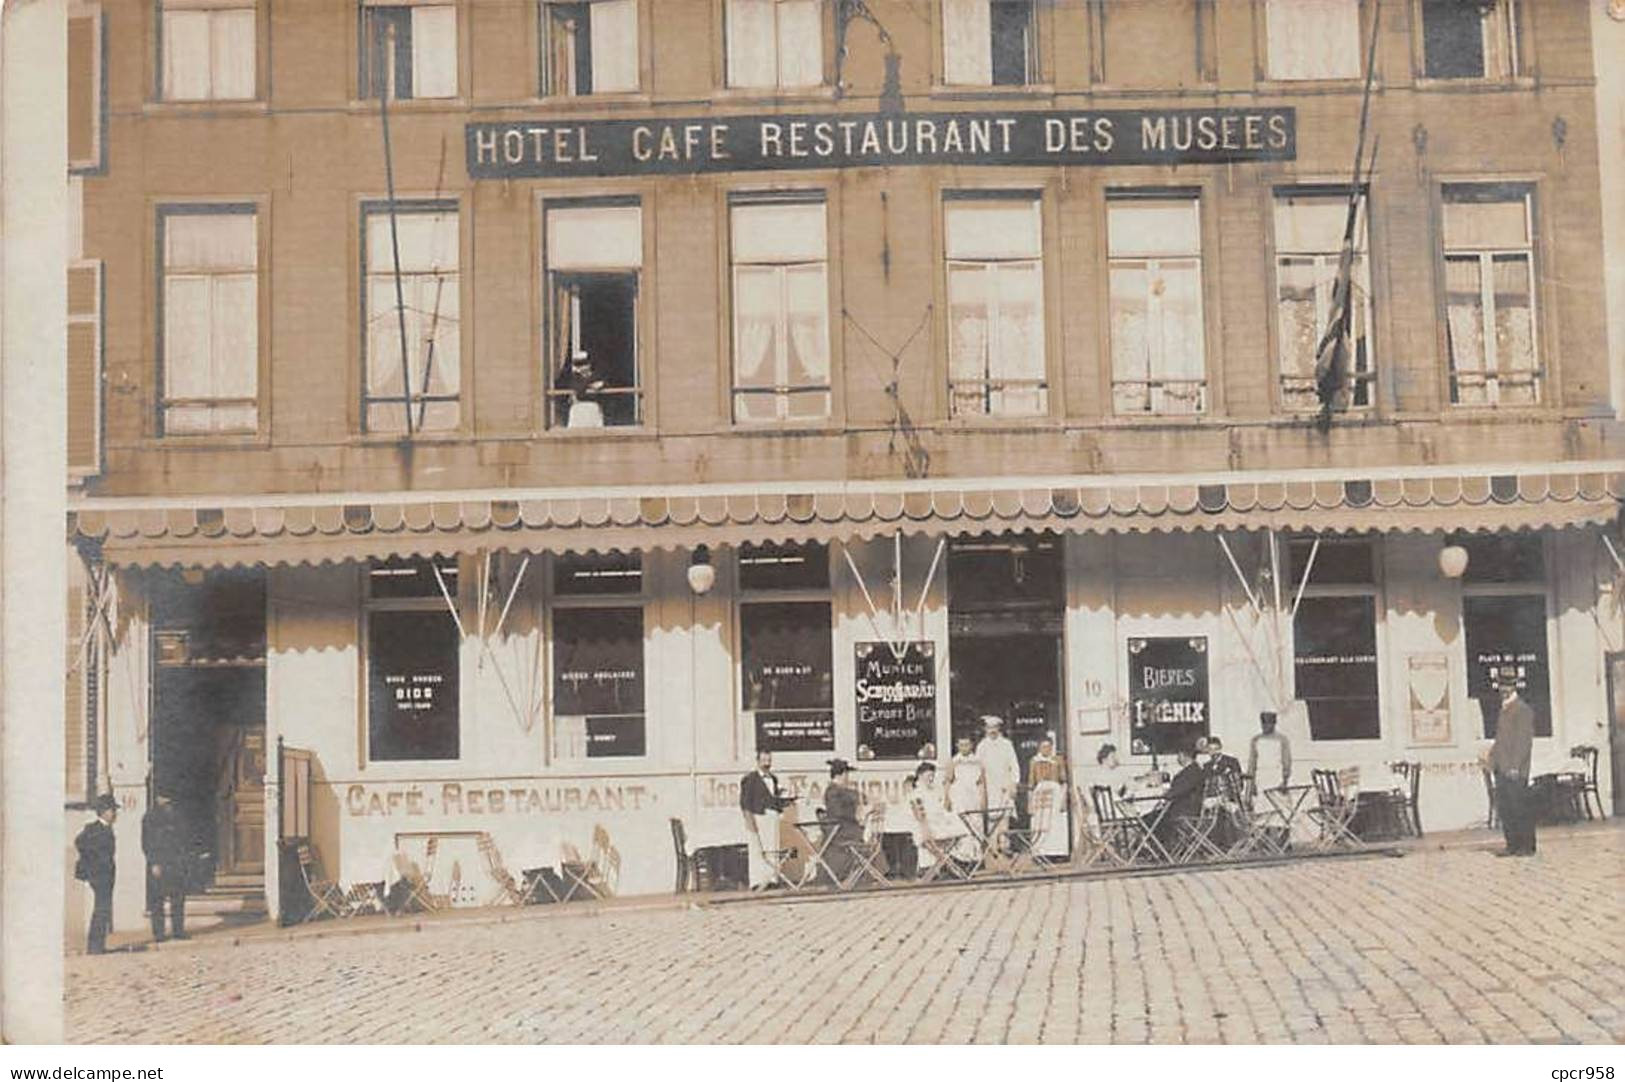 Belgique - N°83182 - Bruxelles.OSTENDE - Hôtel Café Restaurant Des Musées - Carte Photo.Grimbergen - Pubs, Hotels, Restaurants